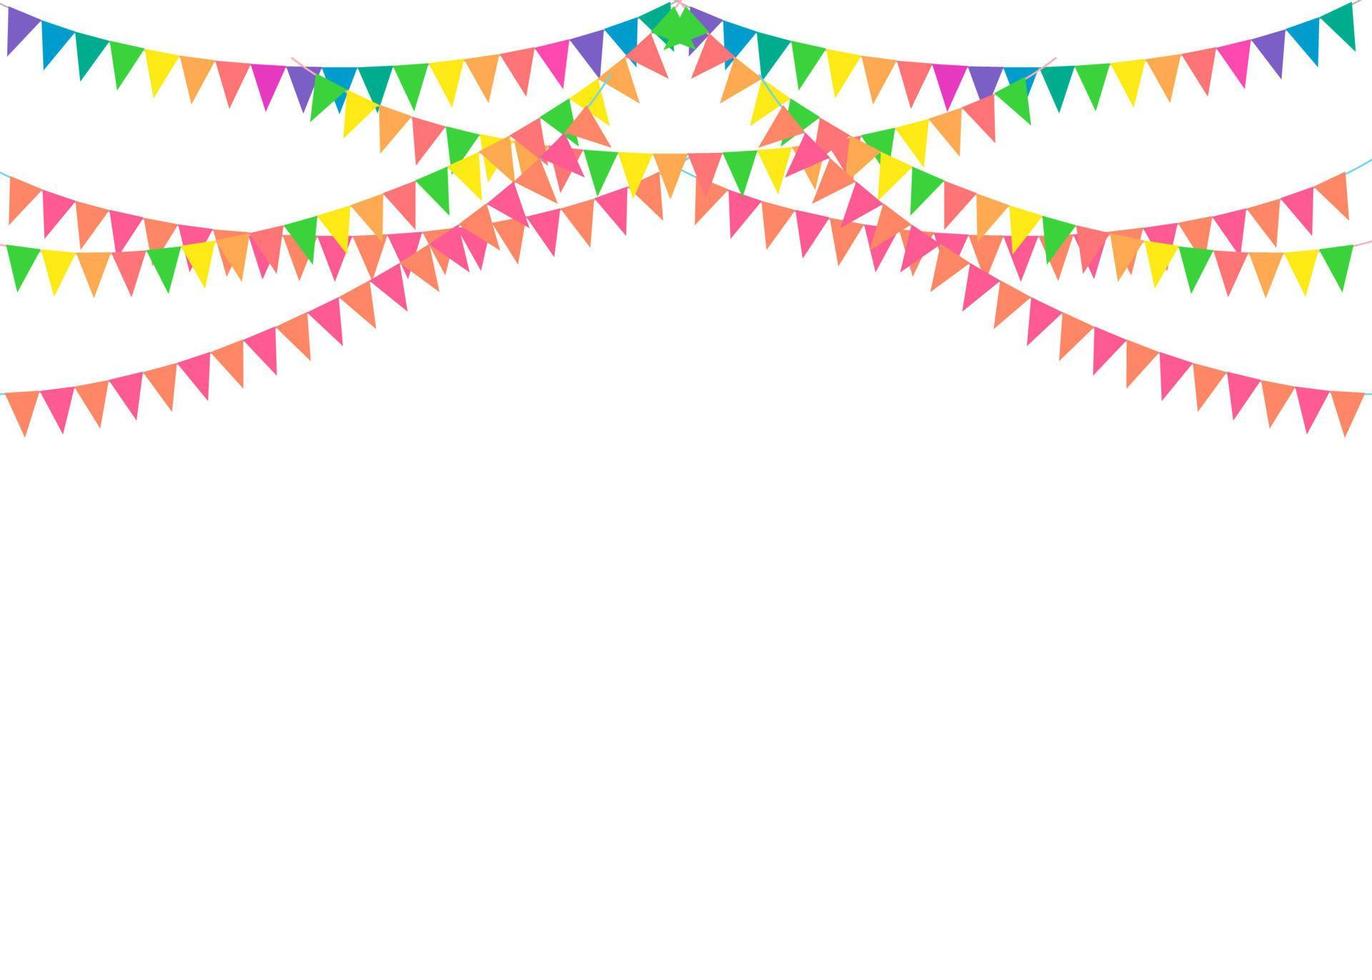 del dekorera koncept med färgglada vimplar hängande ovan. vektor illustration med kopia utrymme för din text. hälsning eller festinbjudan med karnevalsflaggagirlanger.